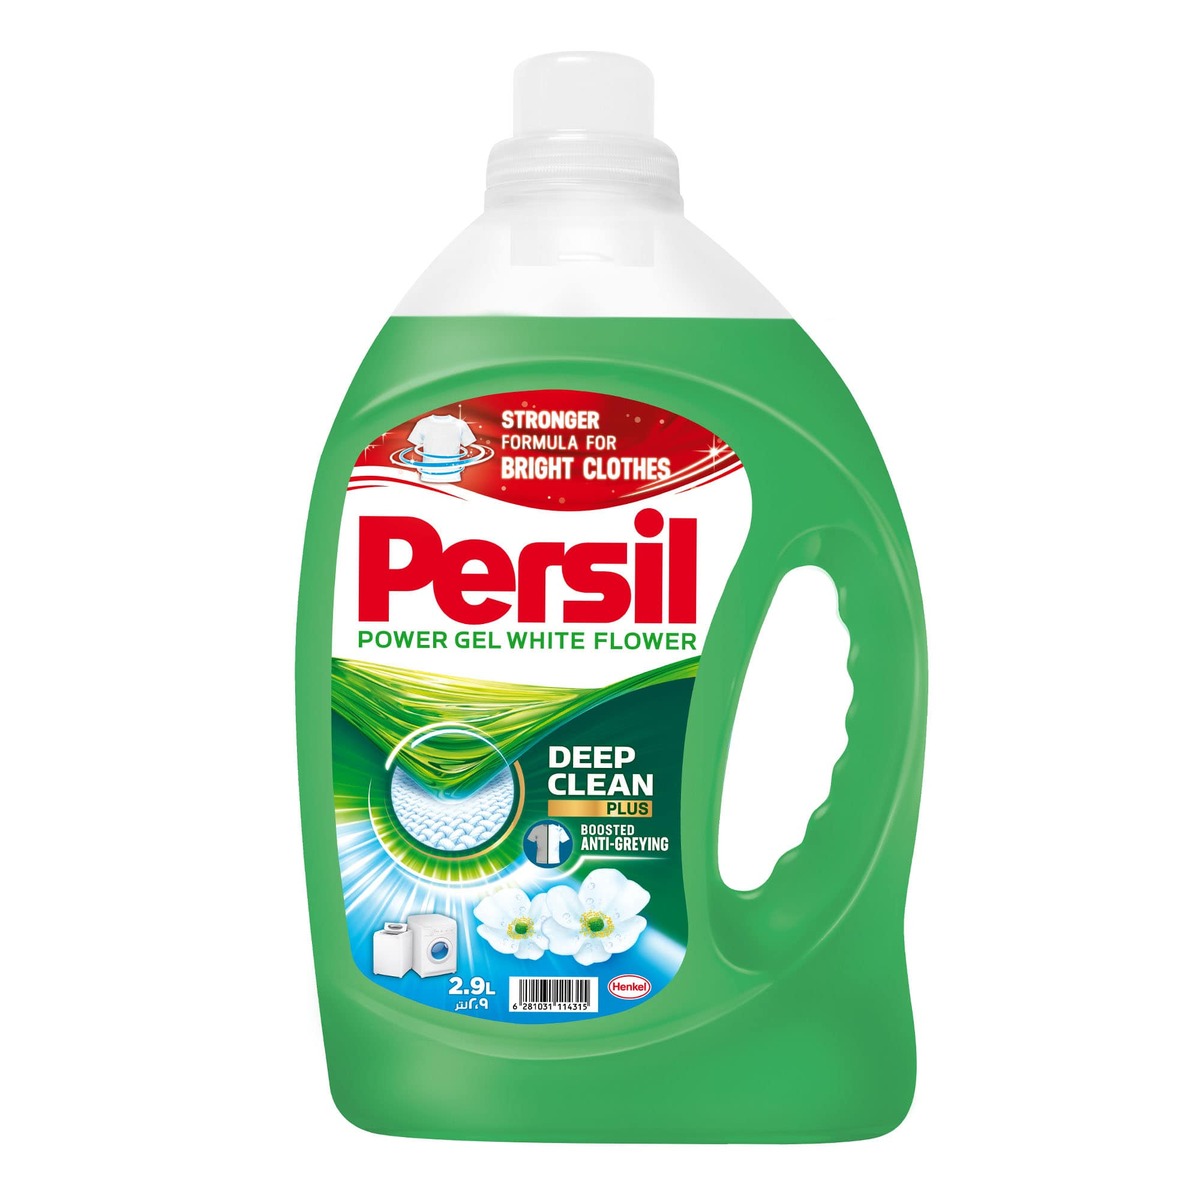 اشتري قم بشراء برسيل سائل منظف باور جل برائحة الورد الأبيض عبوة اقتصادية 2.9 لتر Online at Best Price من الموقع - من لولو هايبر ماركت Liquid Detergent في السعودية